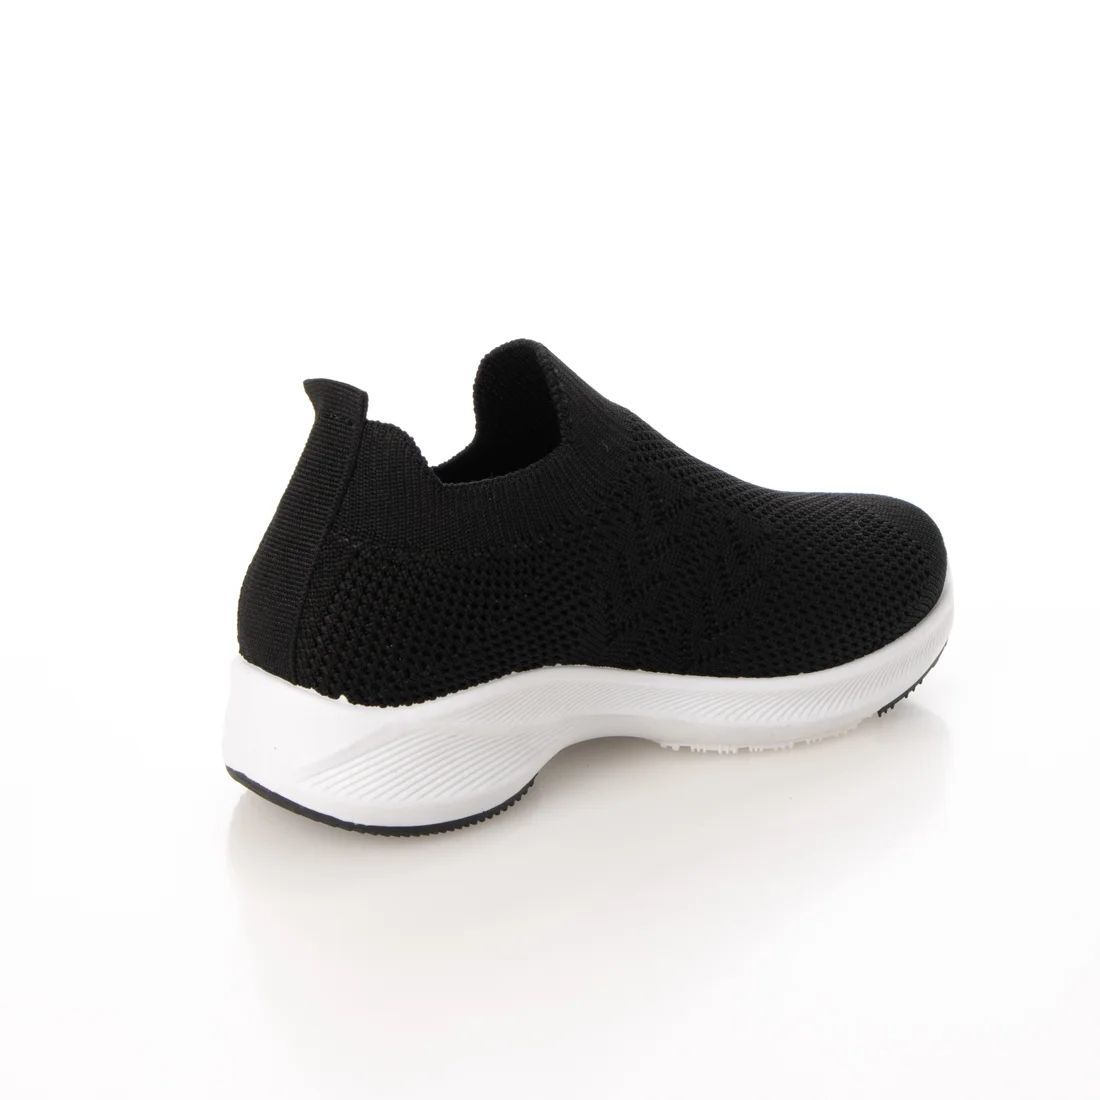 [ новый товар не использовался ] Kids вязаный спортивные туфли черный 16.0cm чёрный 22918